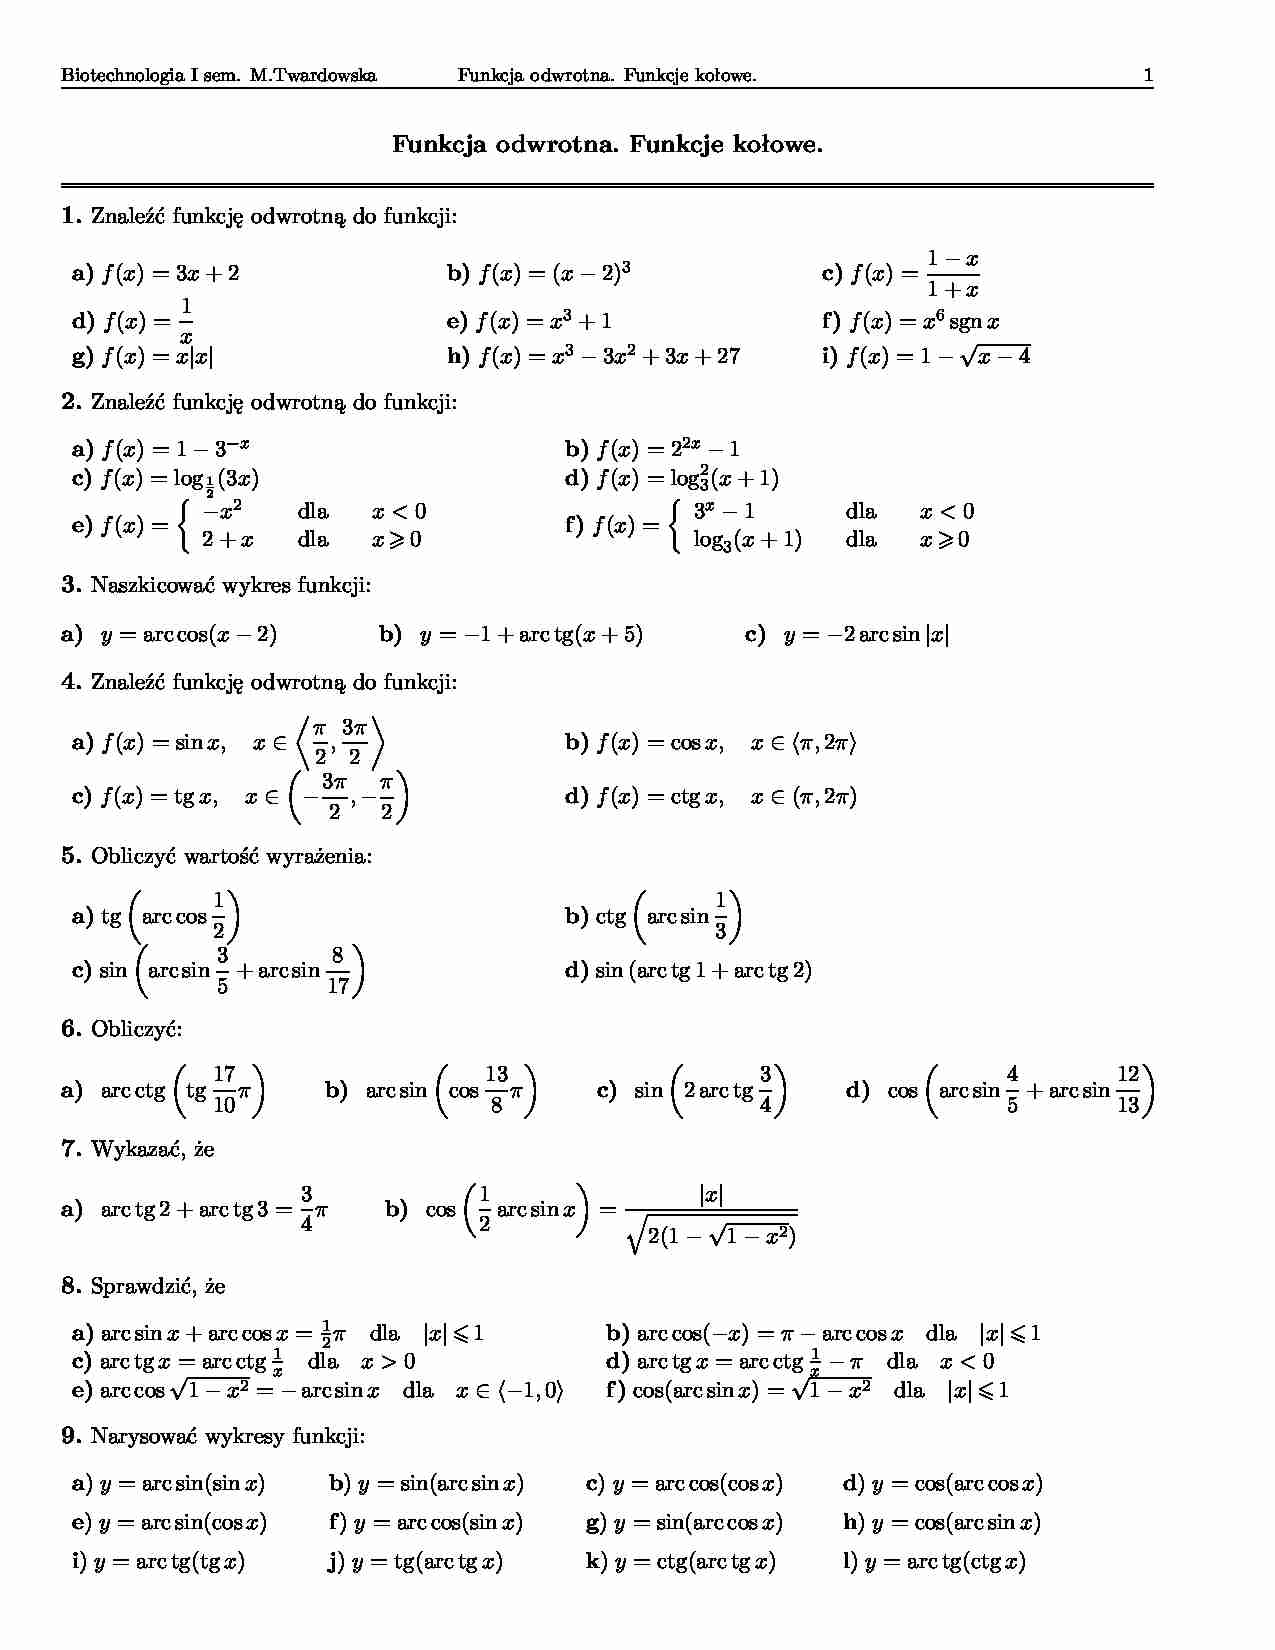 Funkcja odwrotna, funkcje kołowe-opracowanie - strona 1